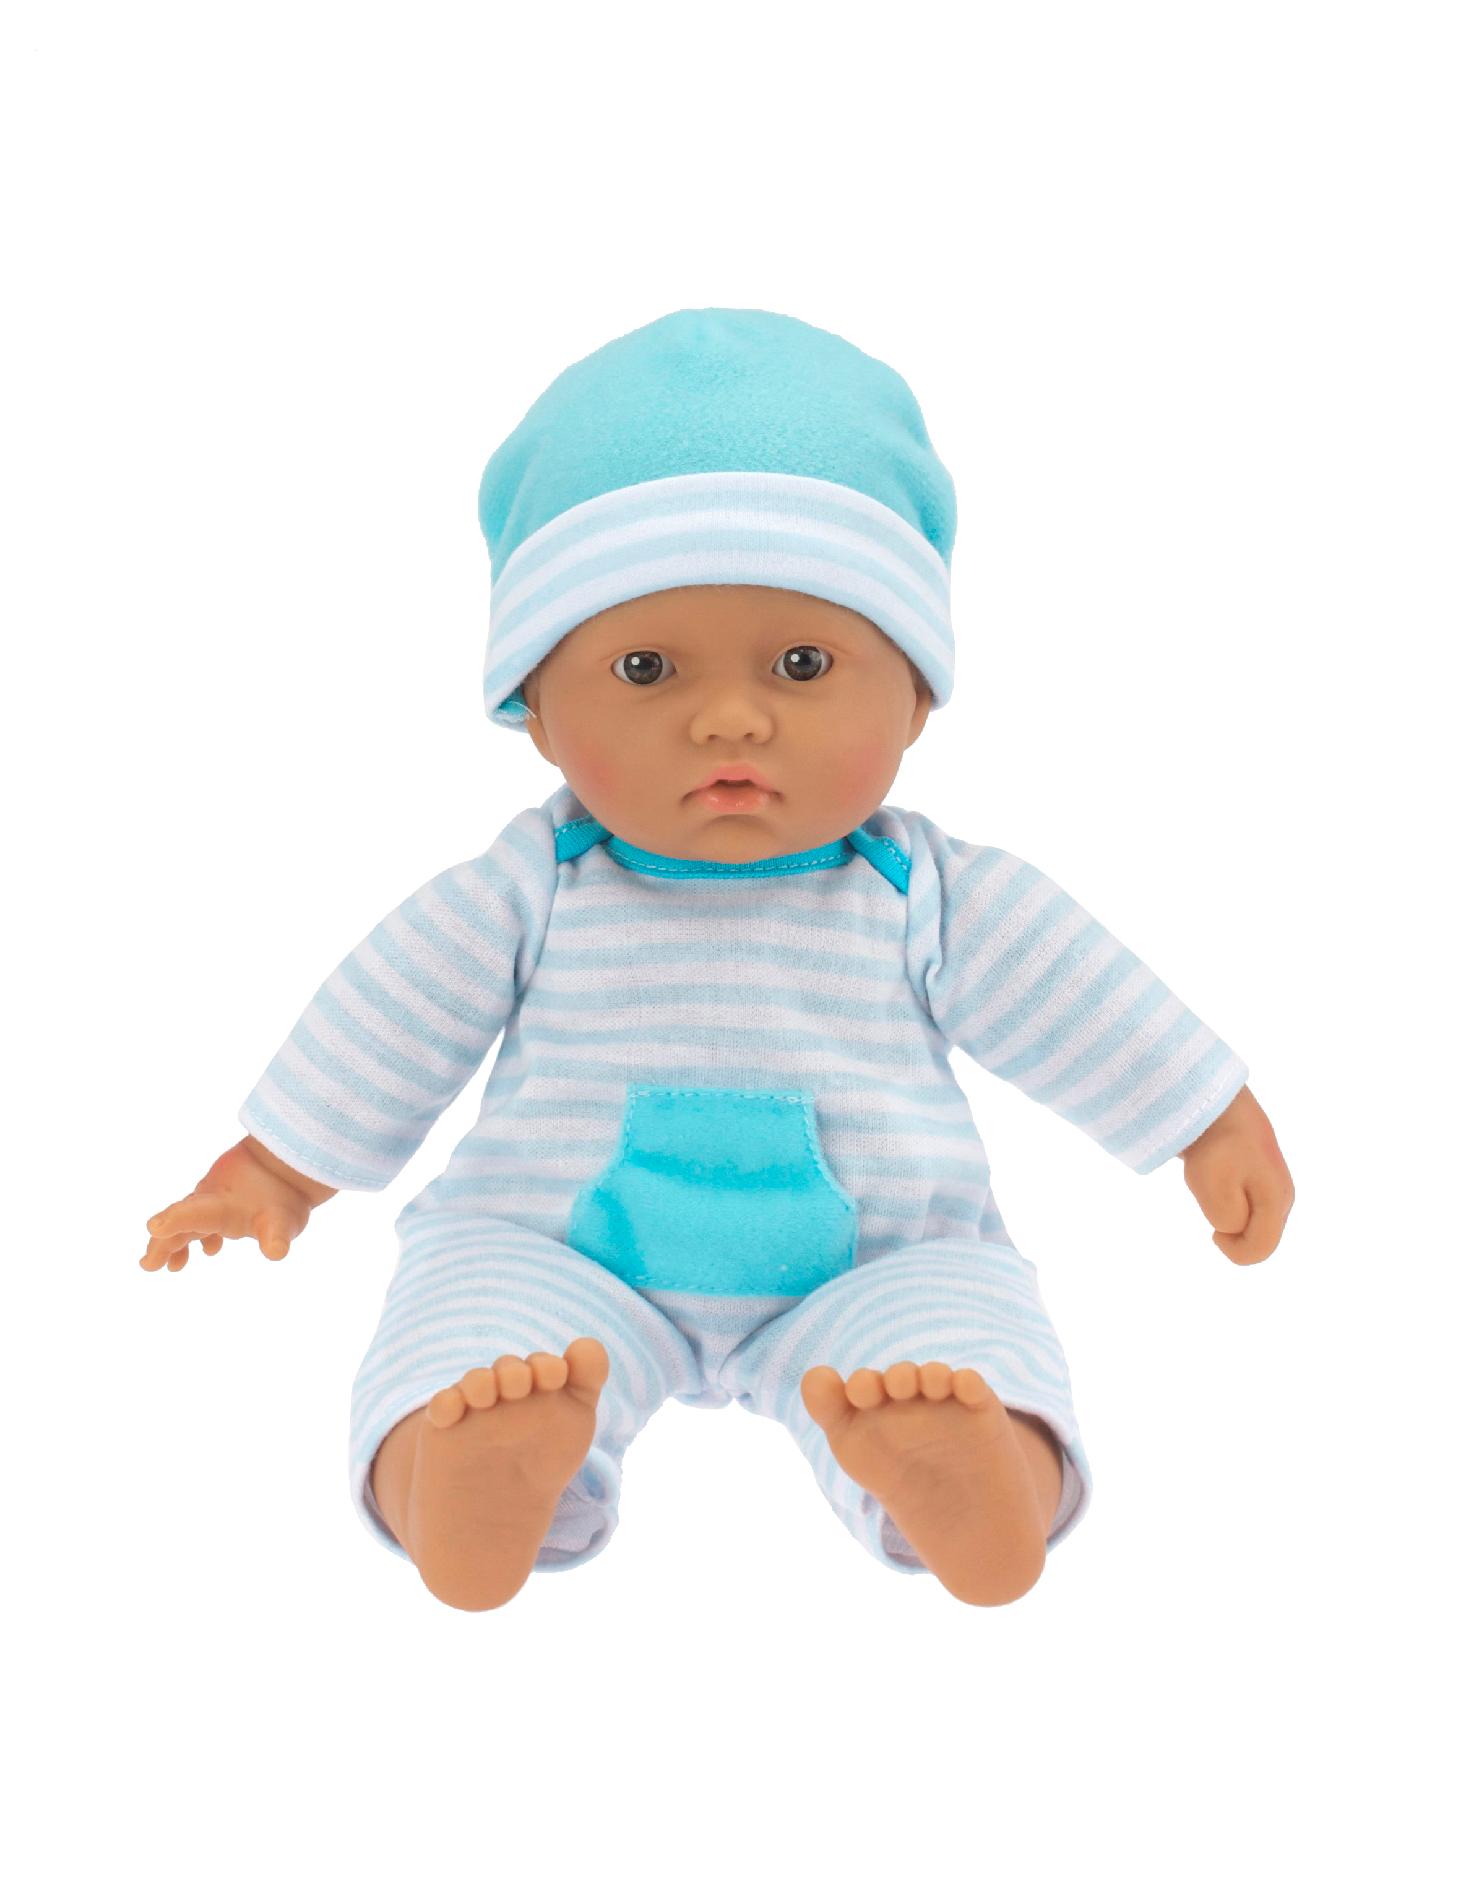 13110 La Baby Soft Body Doll Hispanic